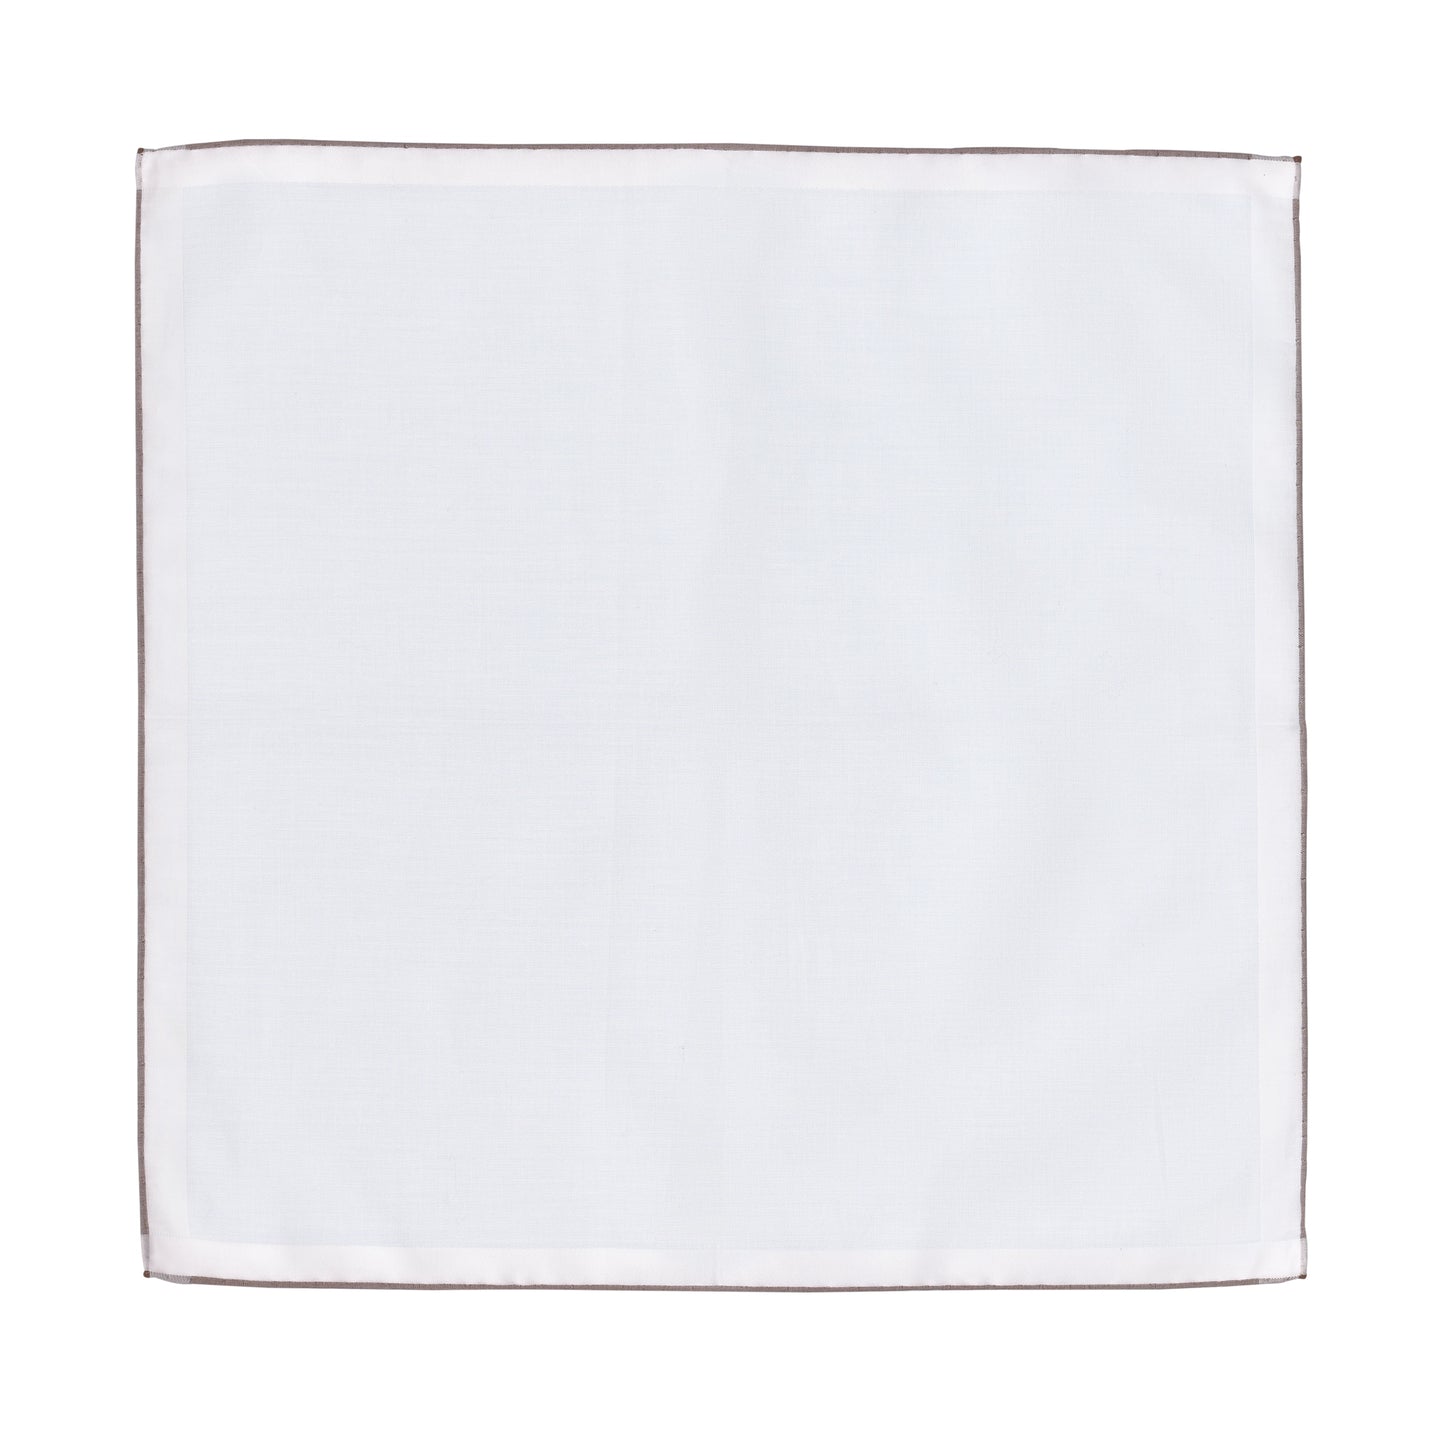 Einstecktuch aus Baumwolle in Weiß mit braunen Kanten